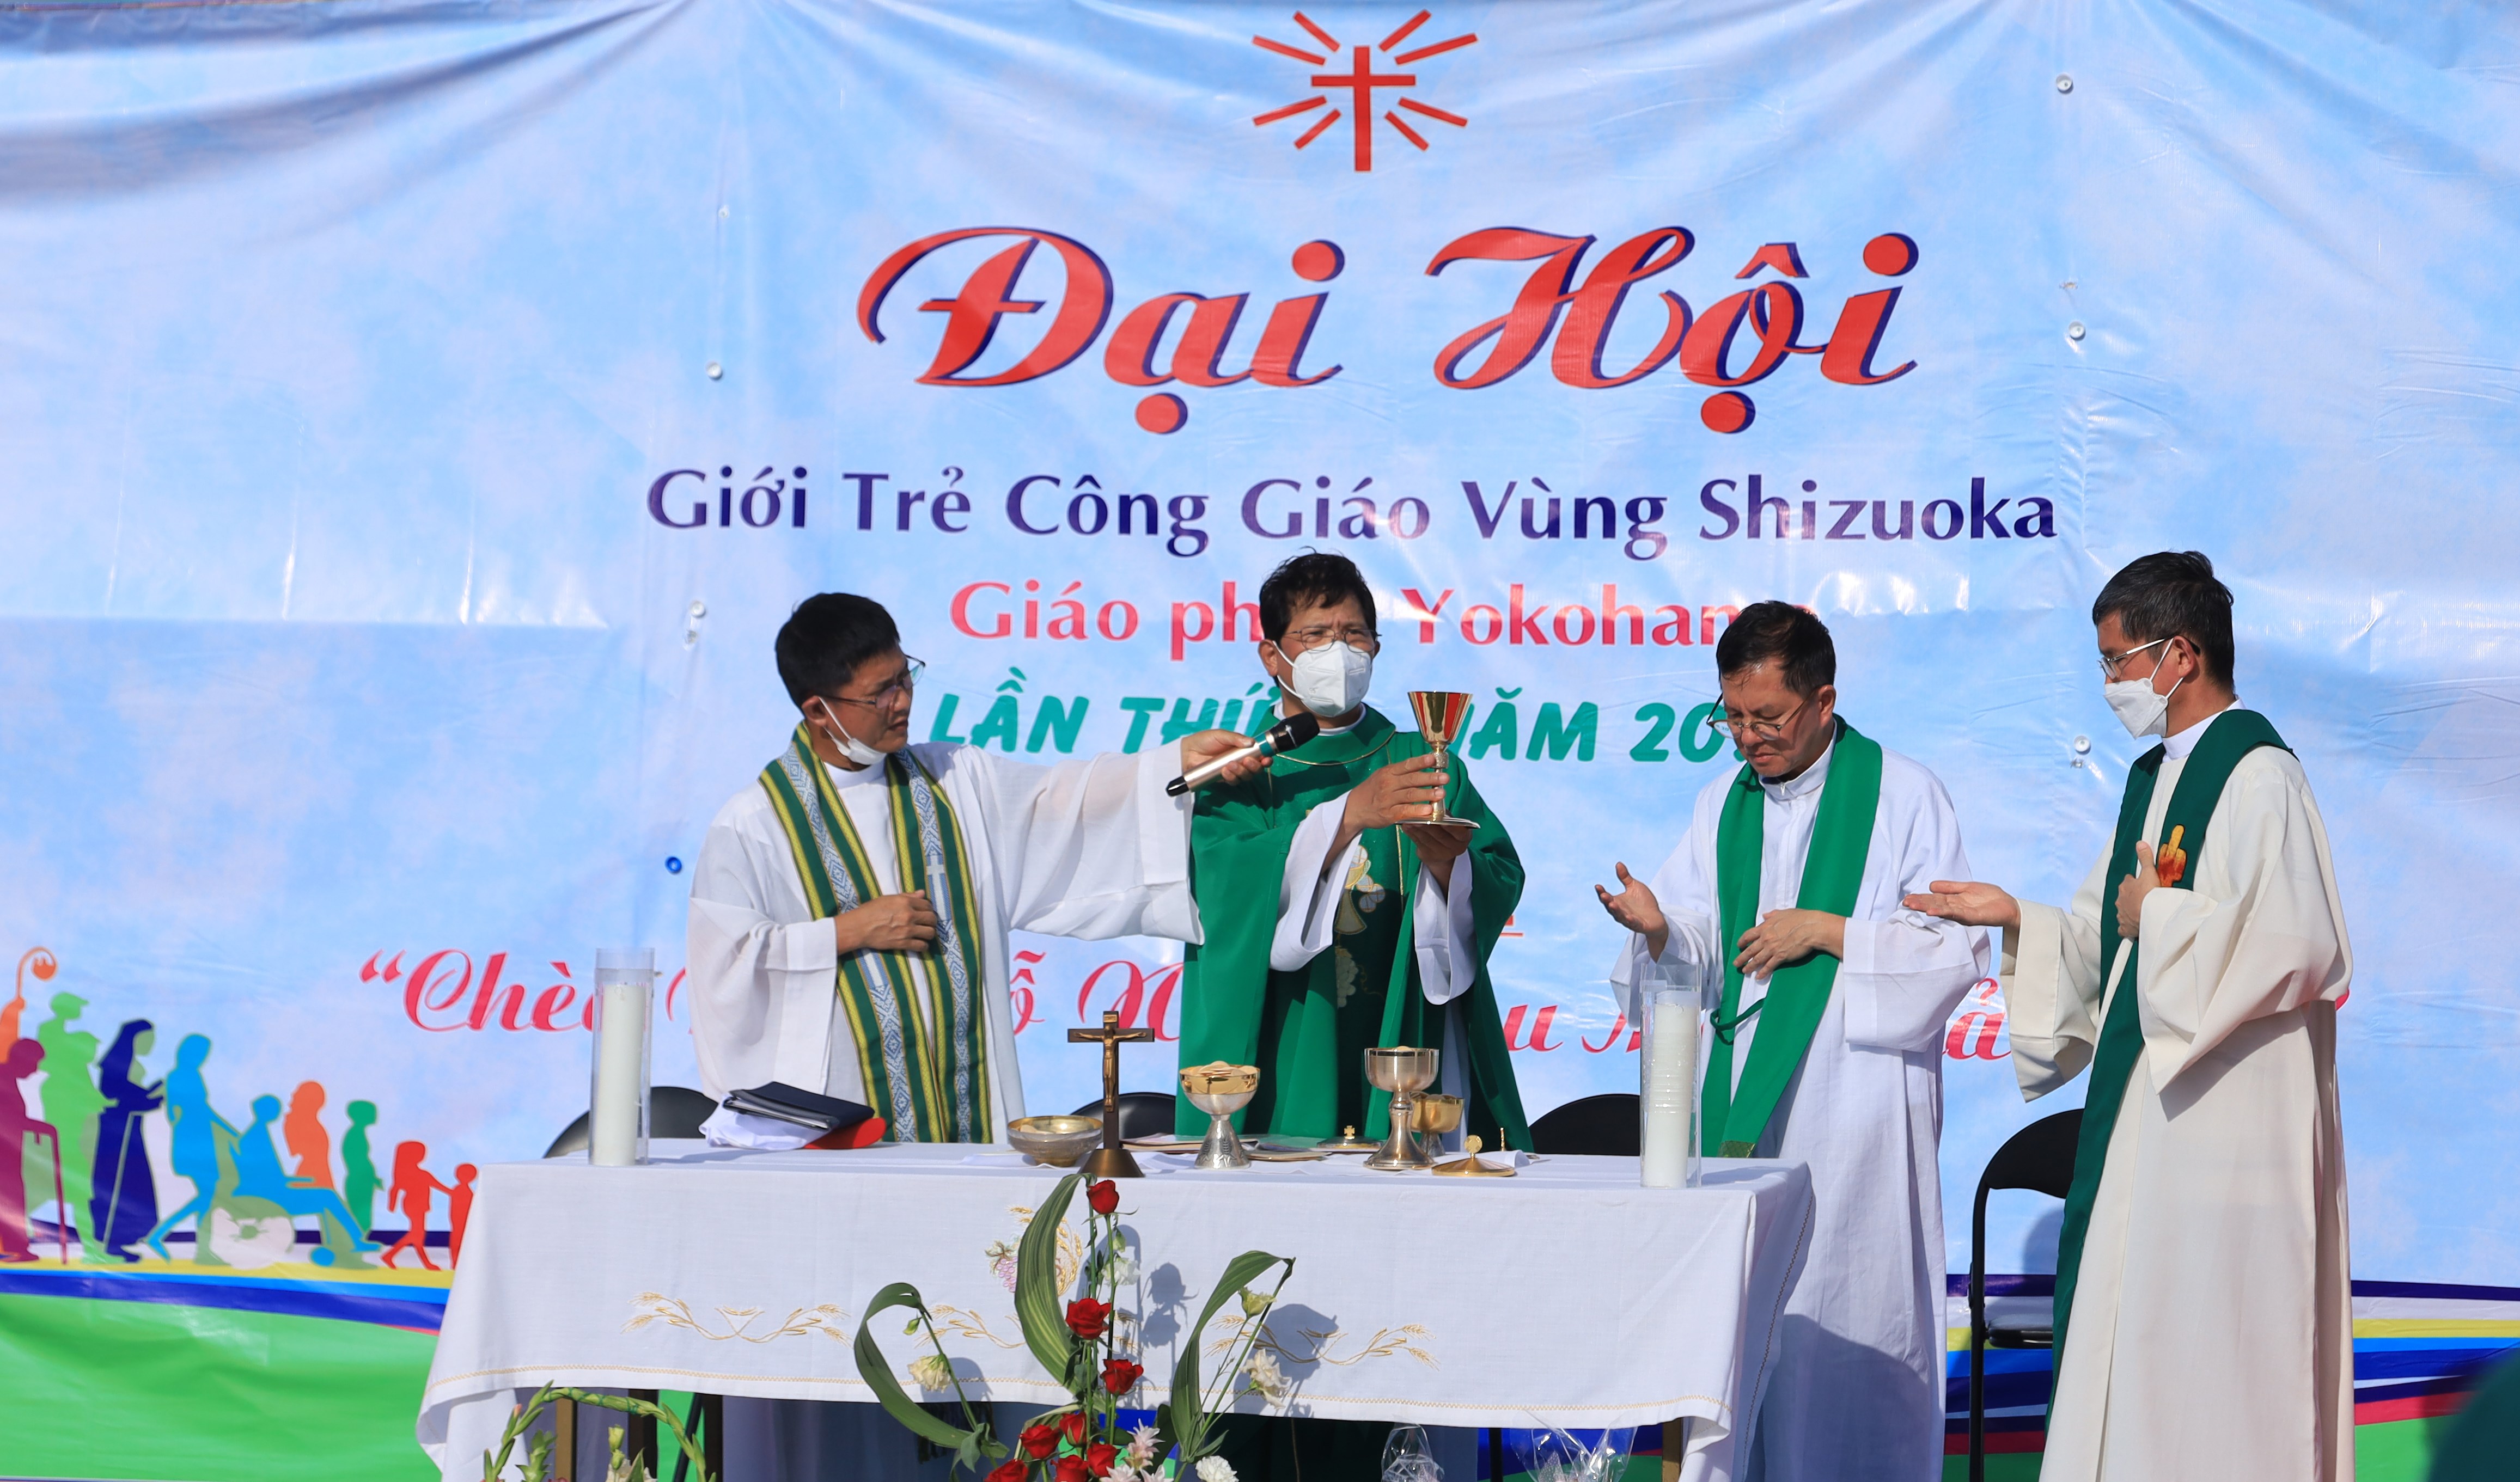 Ðại hội giới trẻ Công giáo Việt Nam vùng Shizuoka - giáo phận Yokohama lần thứ nhất